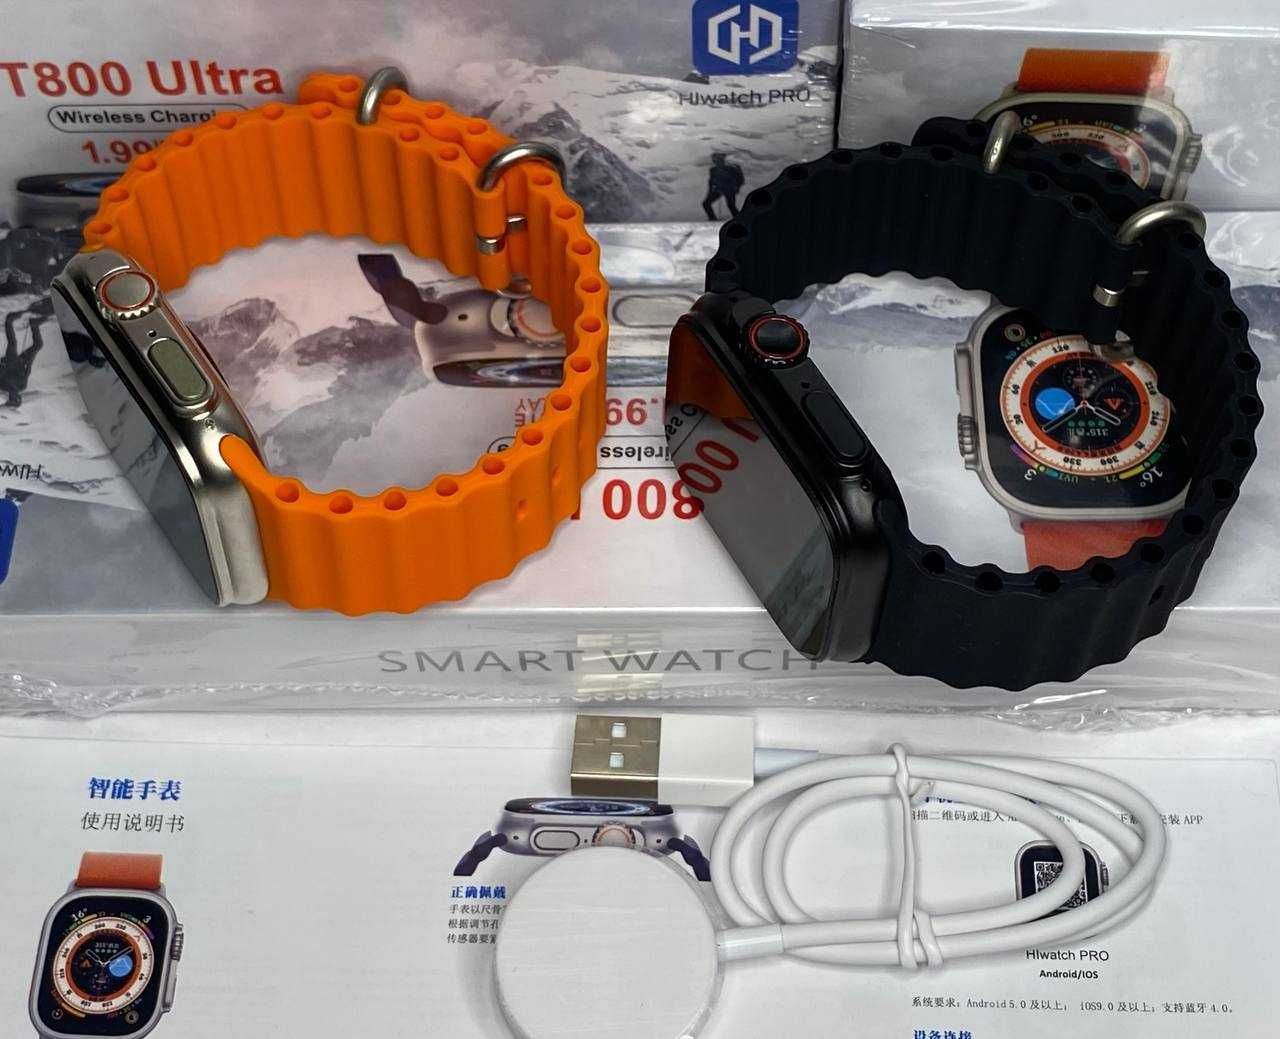 T800 ULTRA smart watch